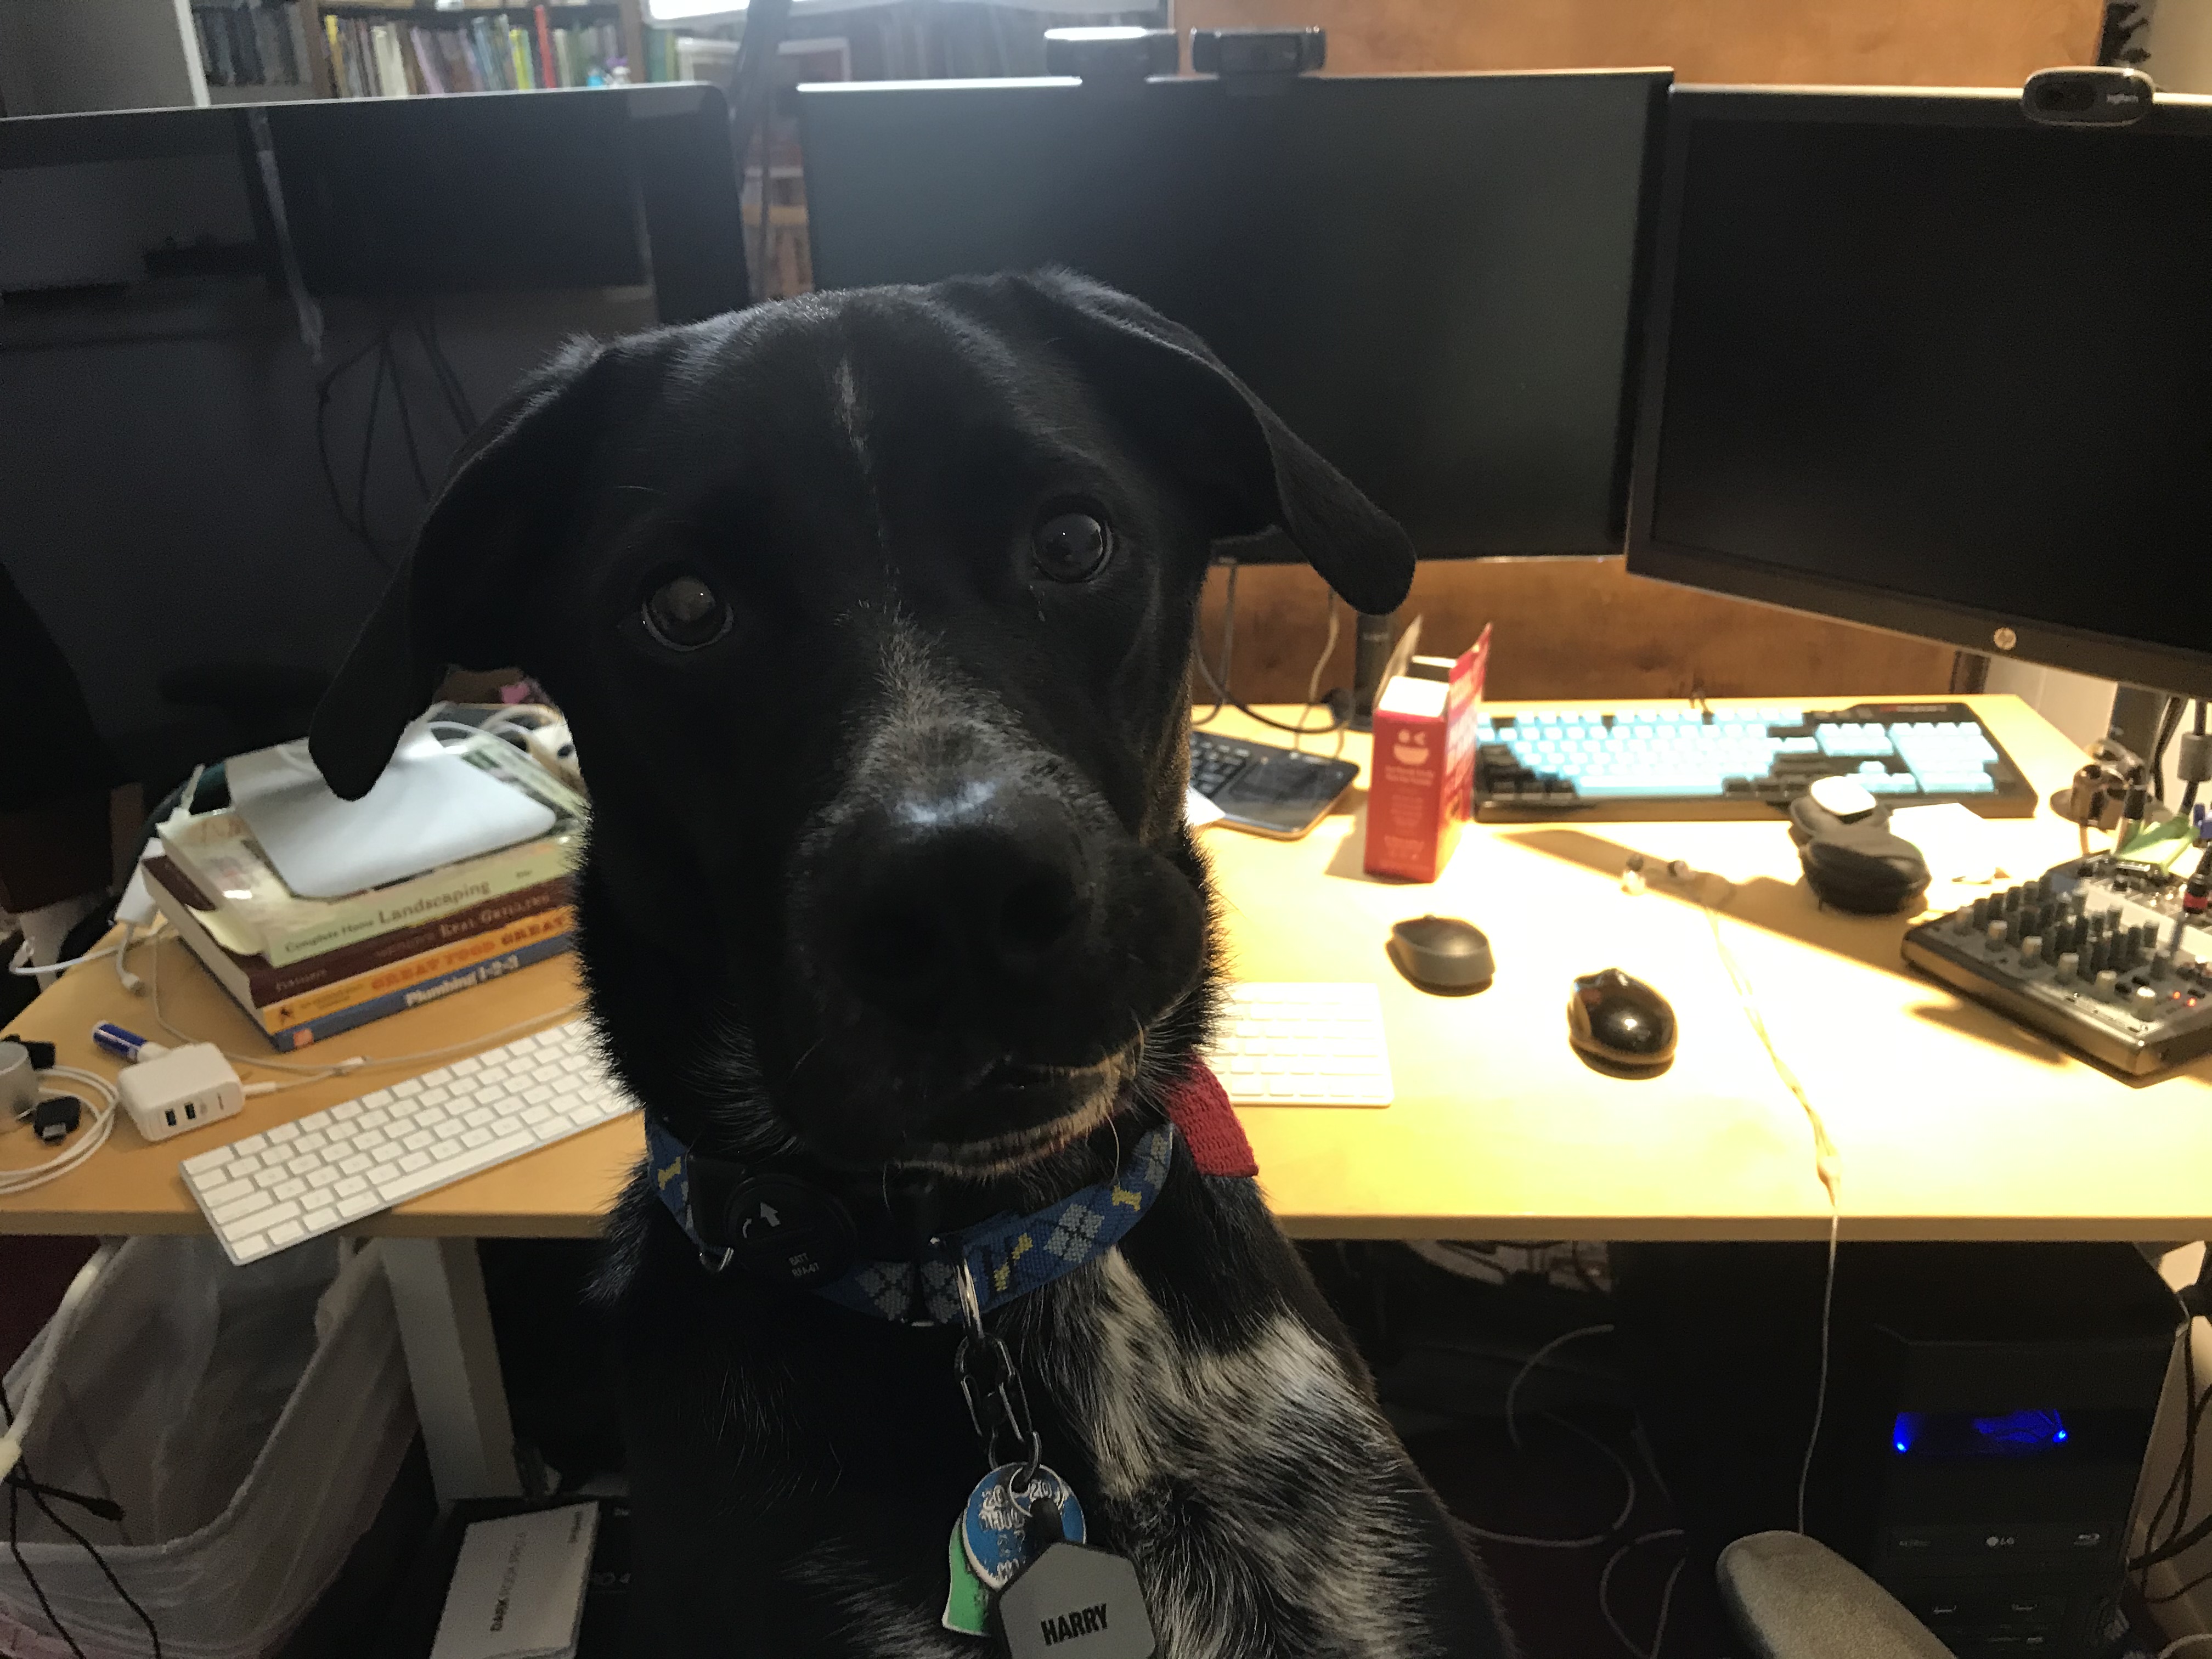 Dog at computer setup